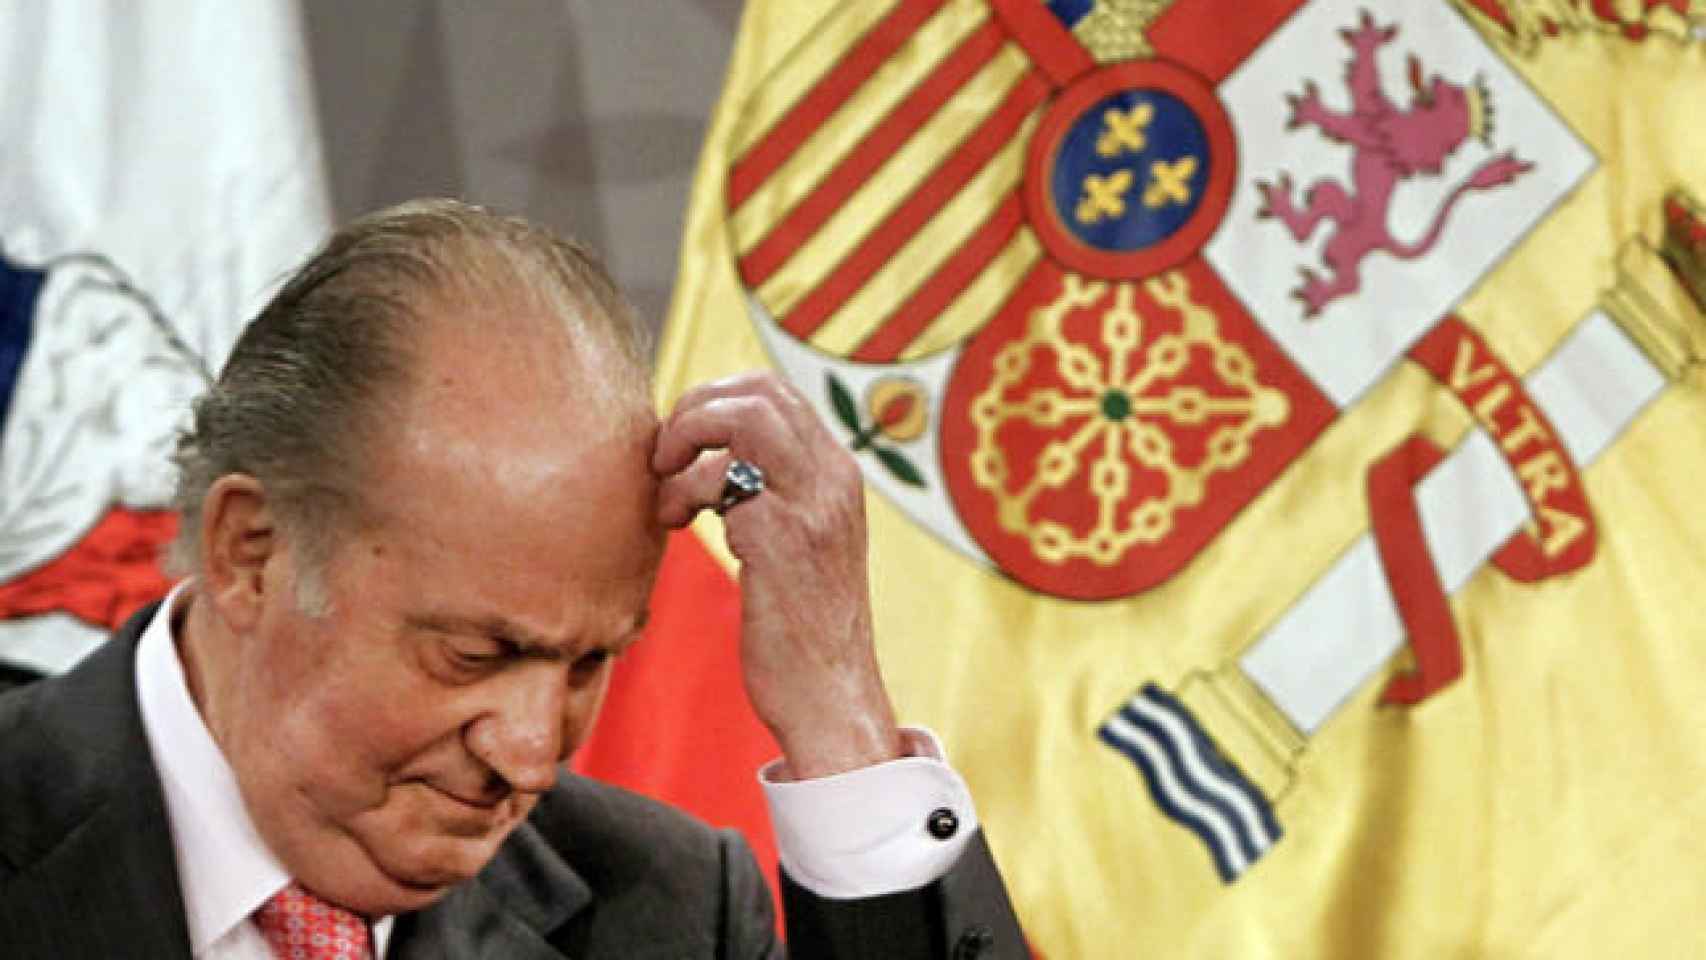 El Rey Juan Carlos I cumple 80 años sintiendo que ha sido obligado a vivir un exilio forzado